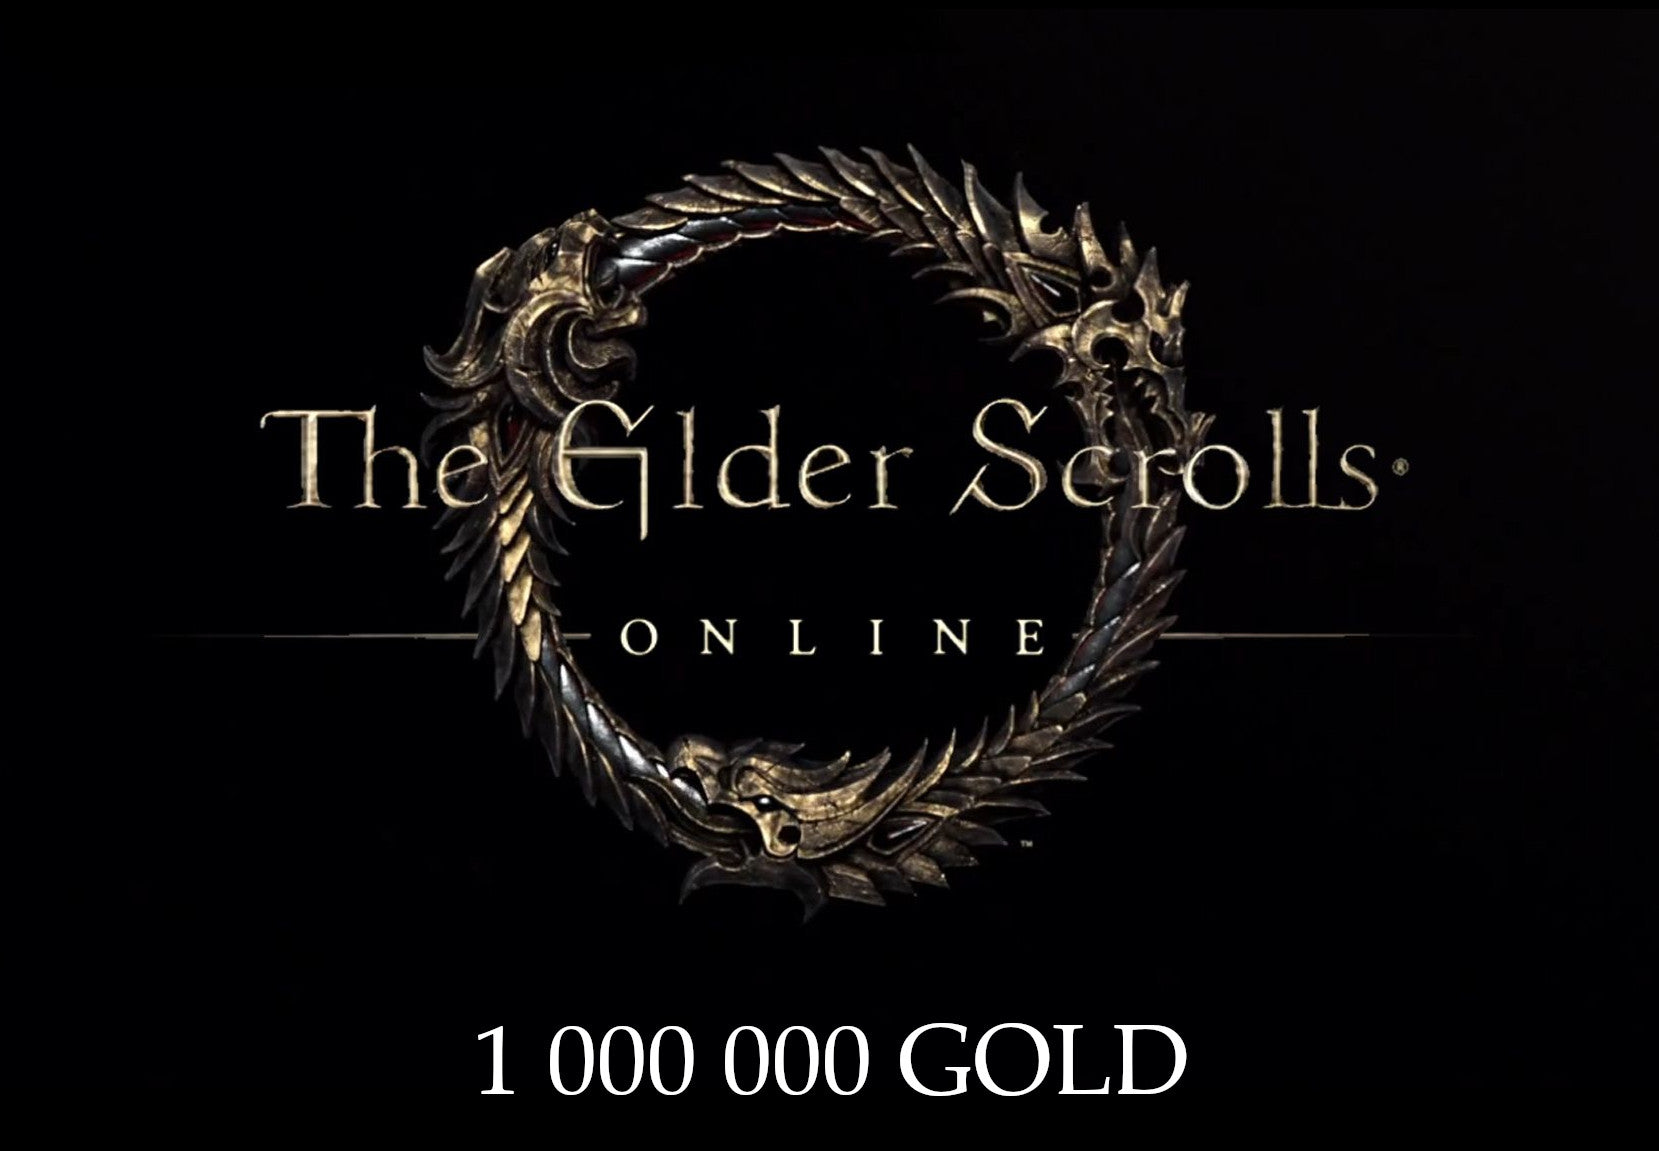 THE ELDER SCROLLS ONLINE GOLD 1000K - PLAYSTATION PS4, PS5 - PSN - MULTILANGUAGE - EU - Libelula Vesela - Jocuri Video